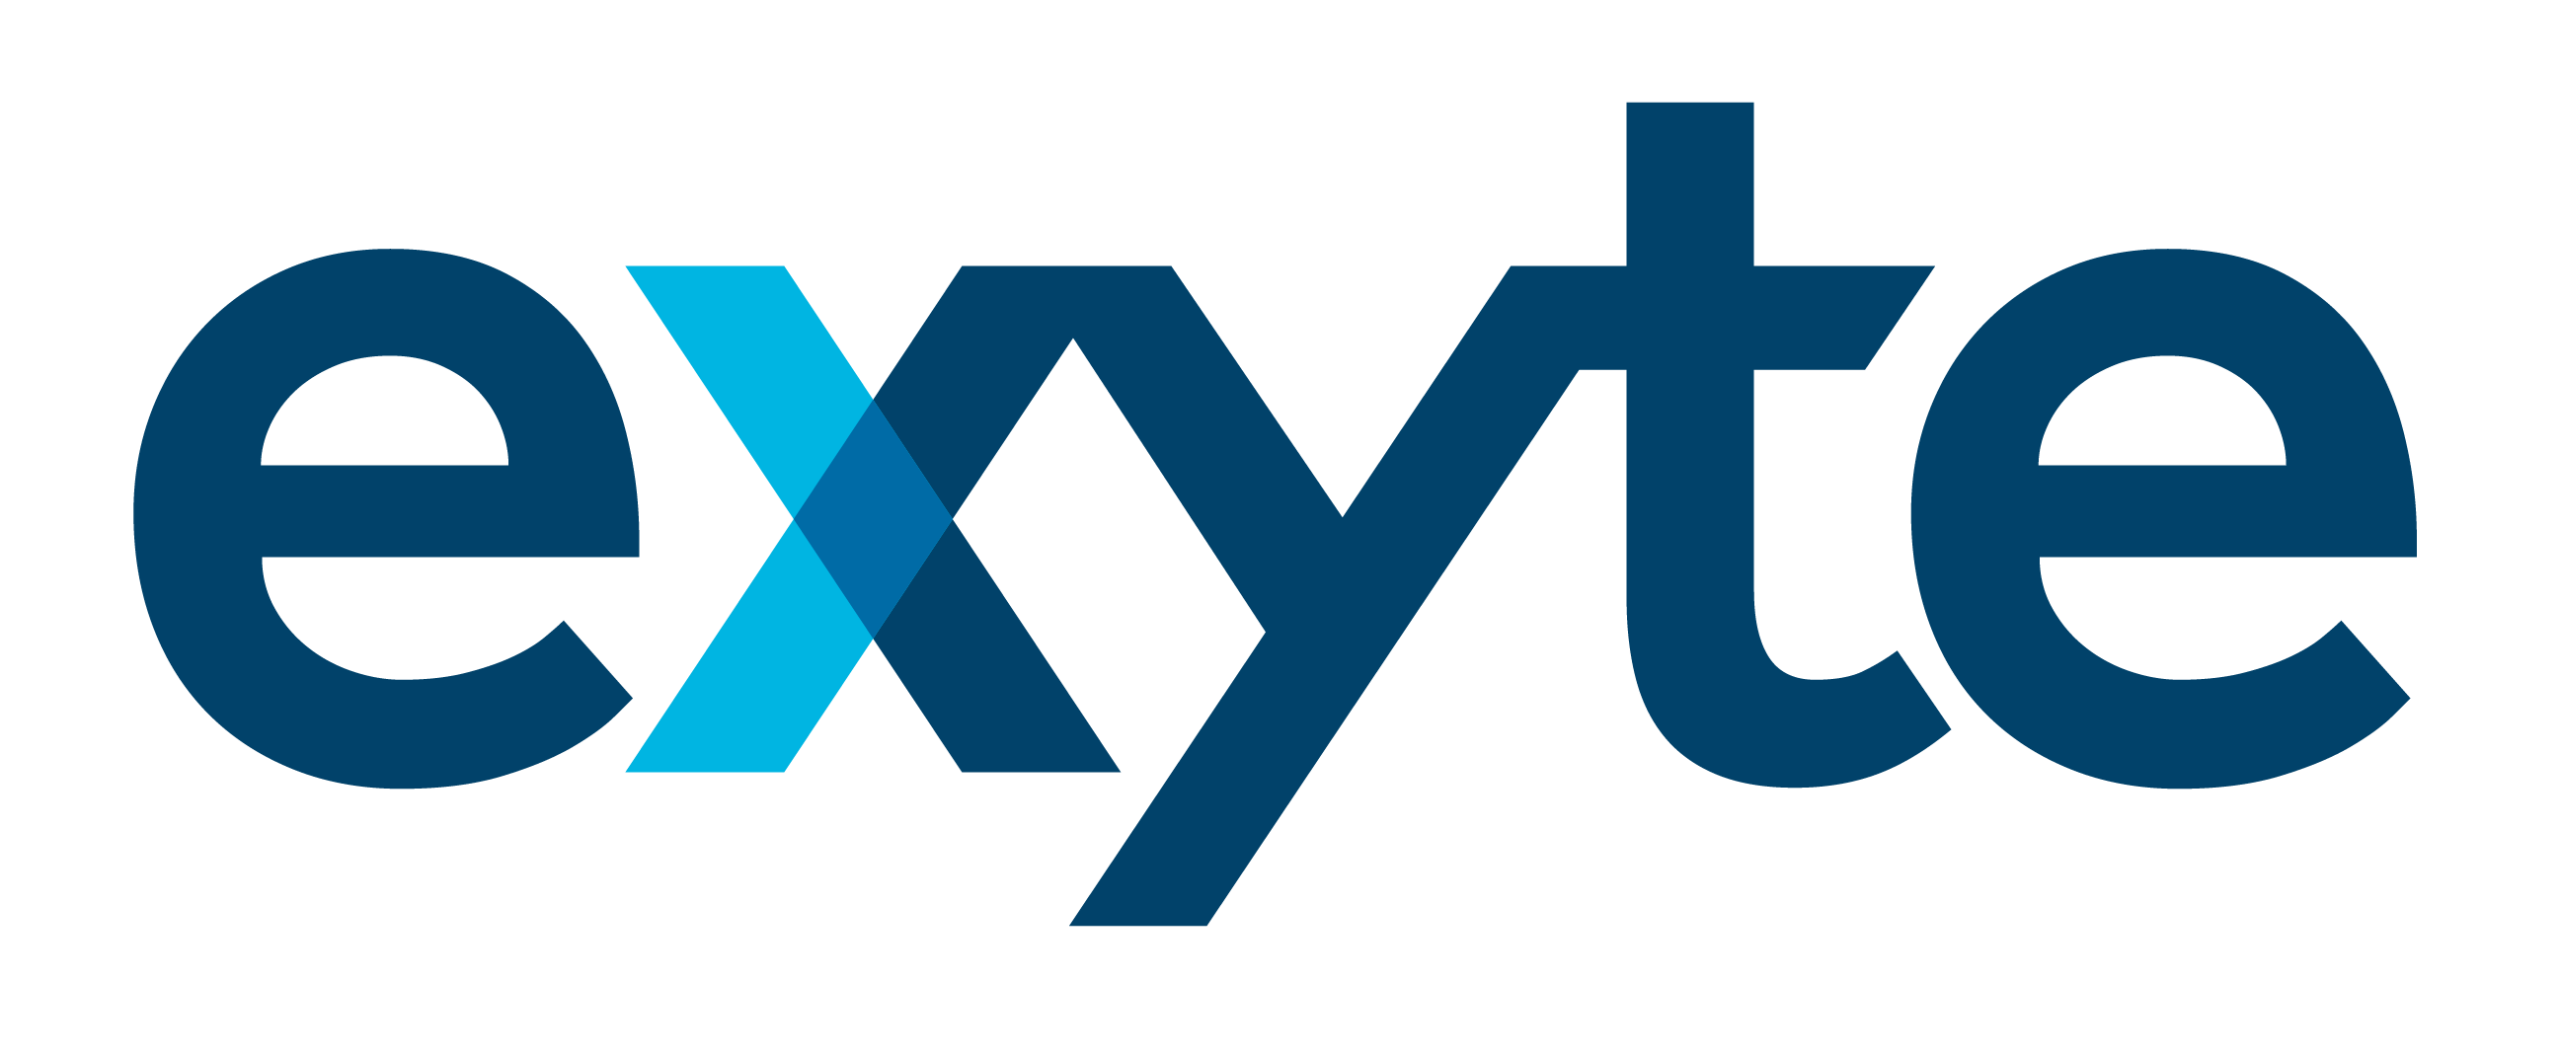 Exyte logo